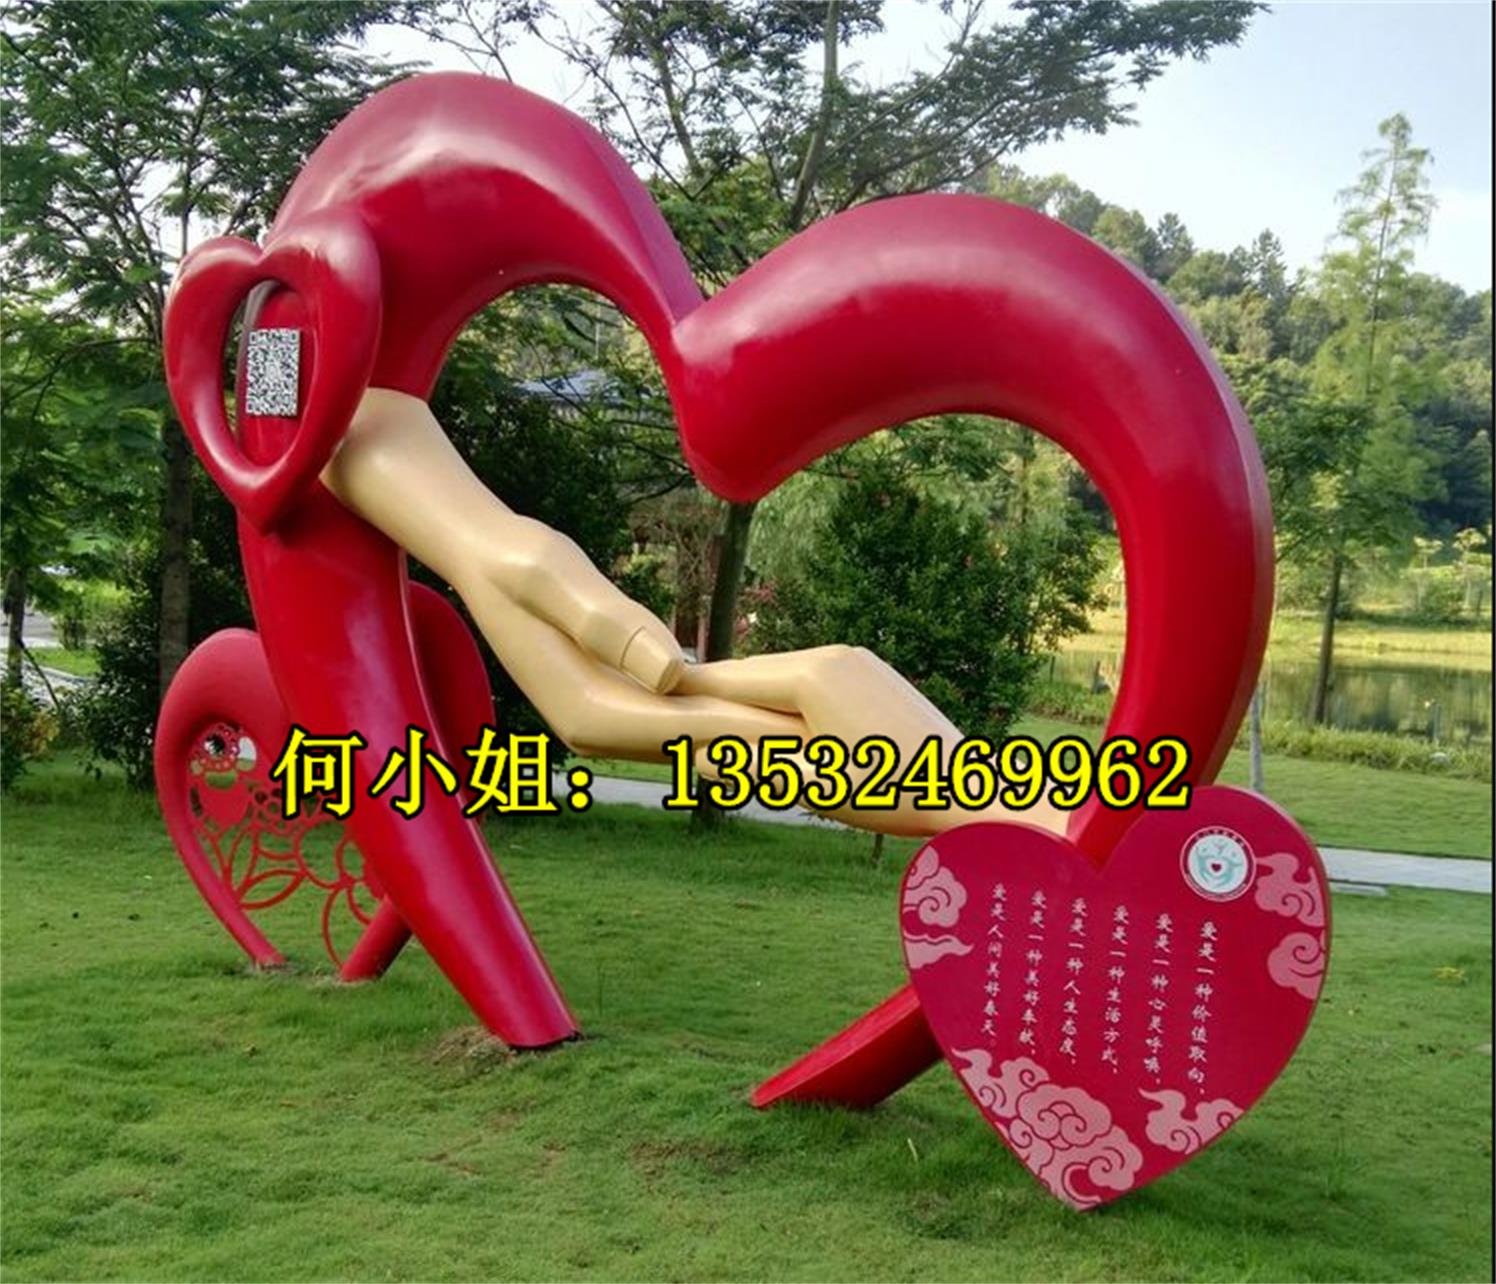 玻璃钢爱心模型雕塑树脂纤维心形造型大摆件公园装饰浪漫主题定制